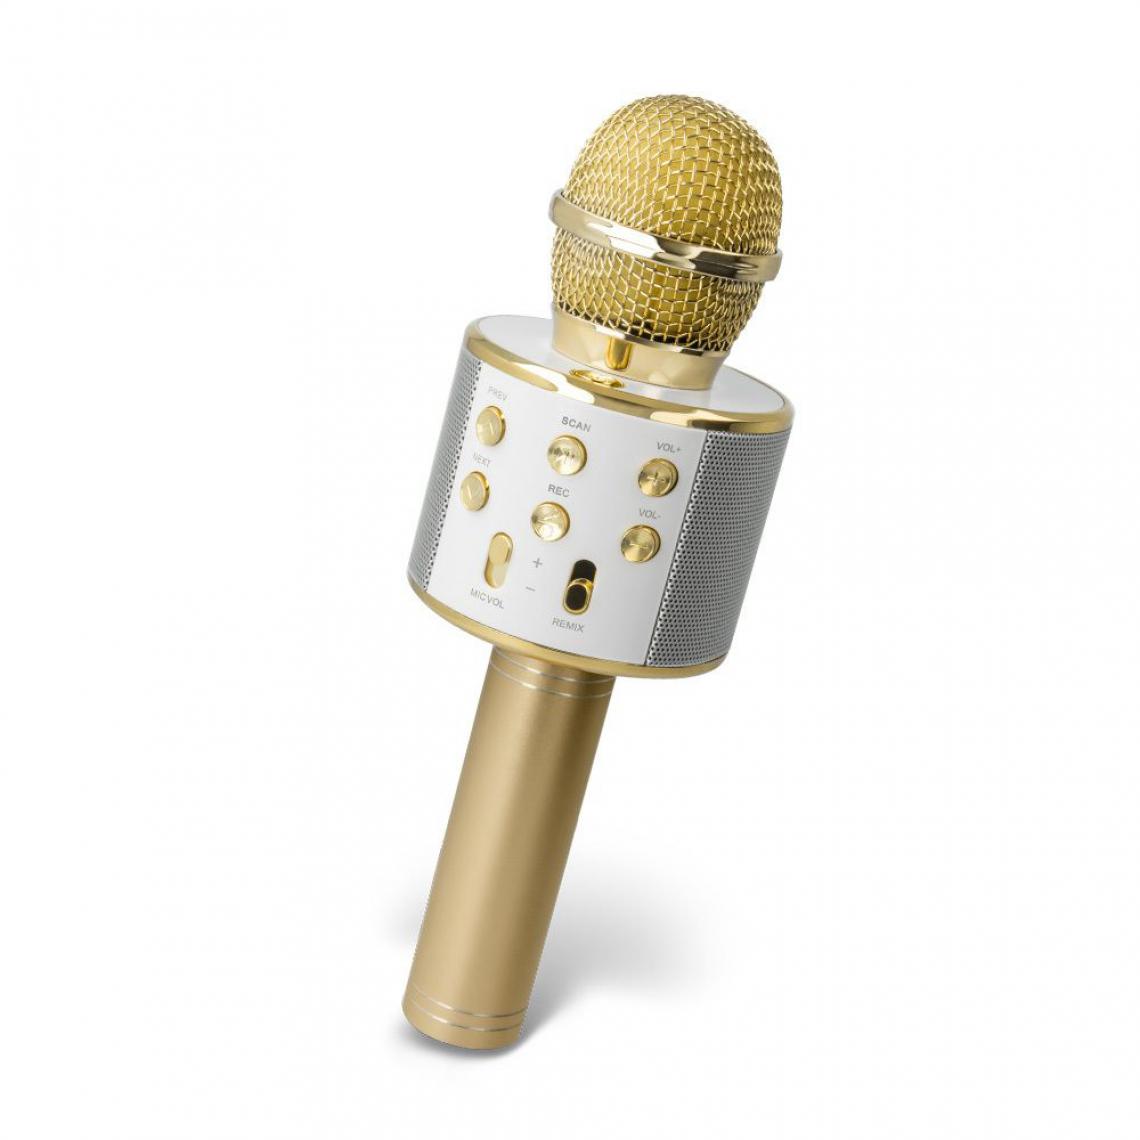 Ozzzo - Microphone Karaoke bluetooth haut parleur ozzzo Gold Or pour LG Stylo 4 Plus - Autres accessoires smartphone